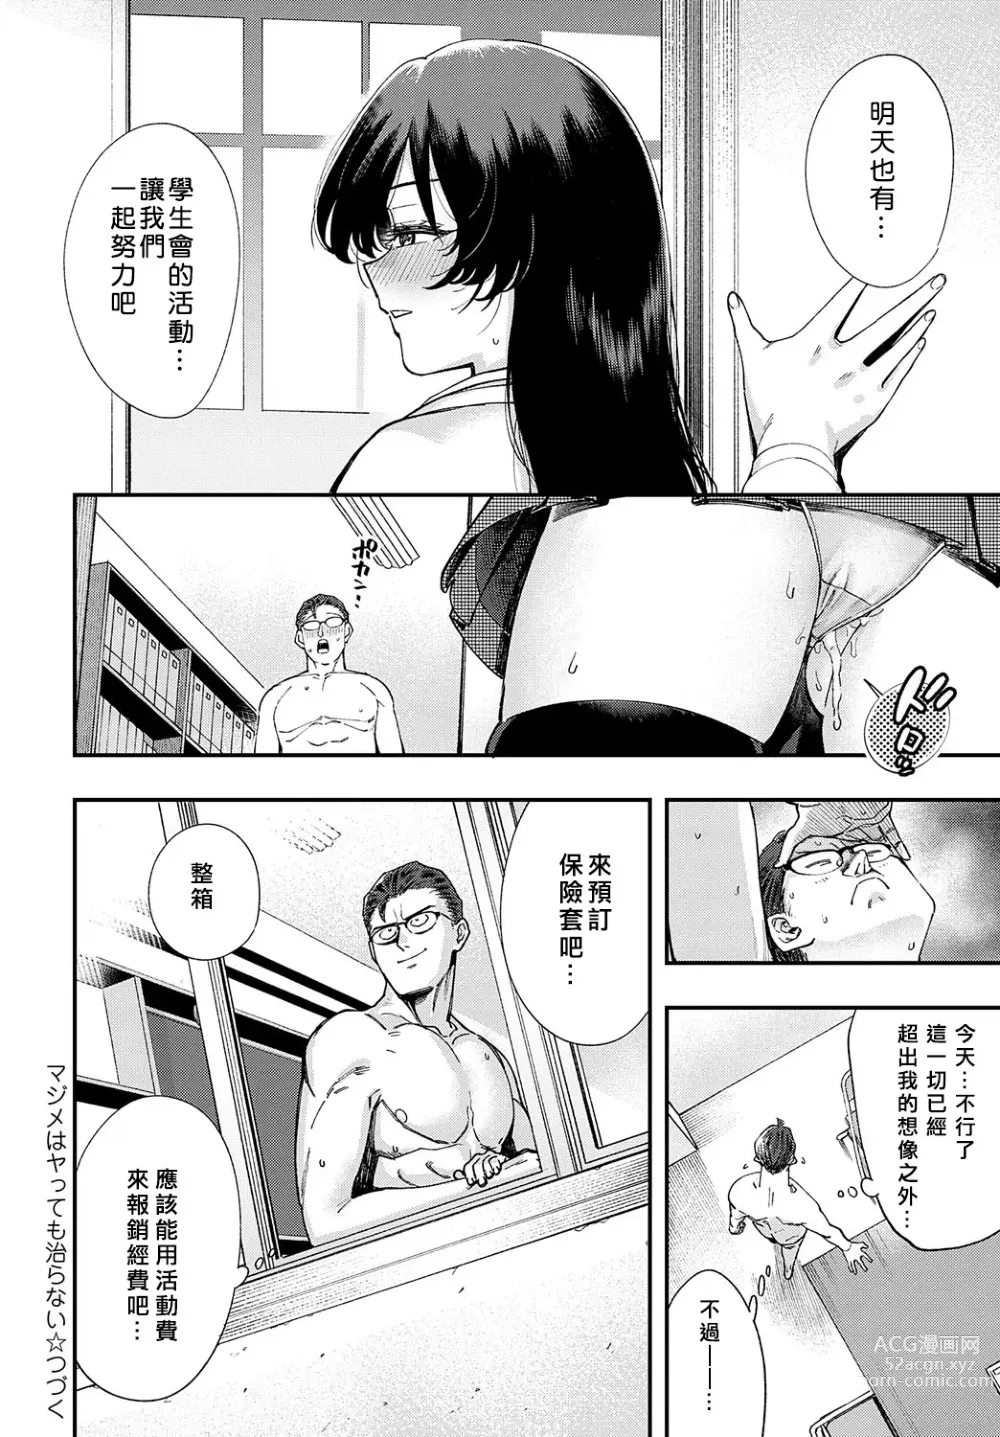 Page 34 of manga Majime wa Yattemo Naoranai Ch. 1